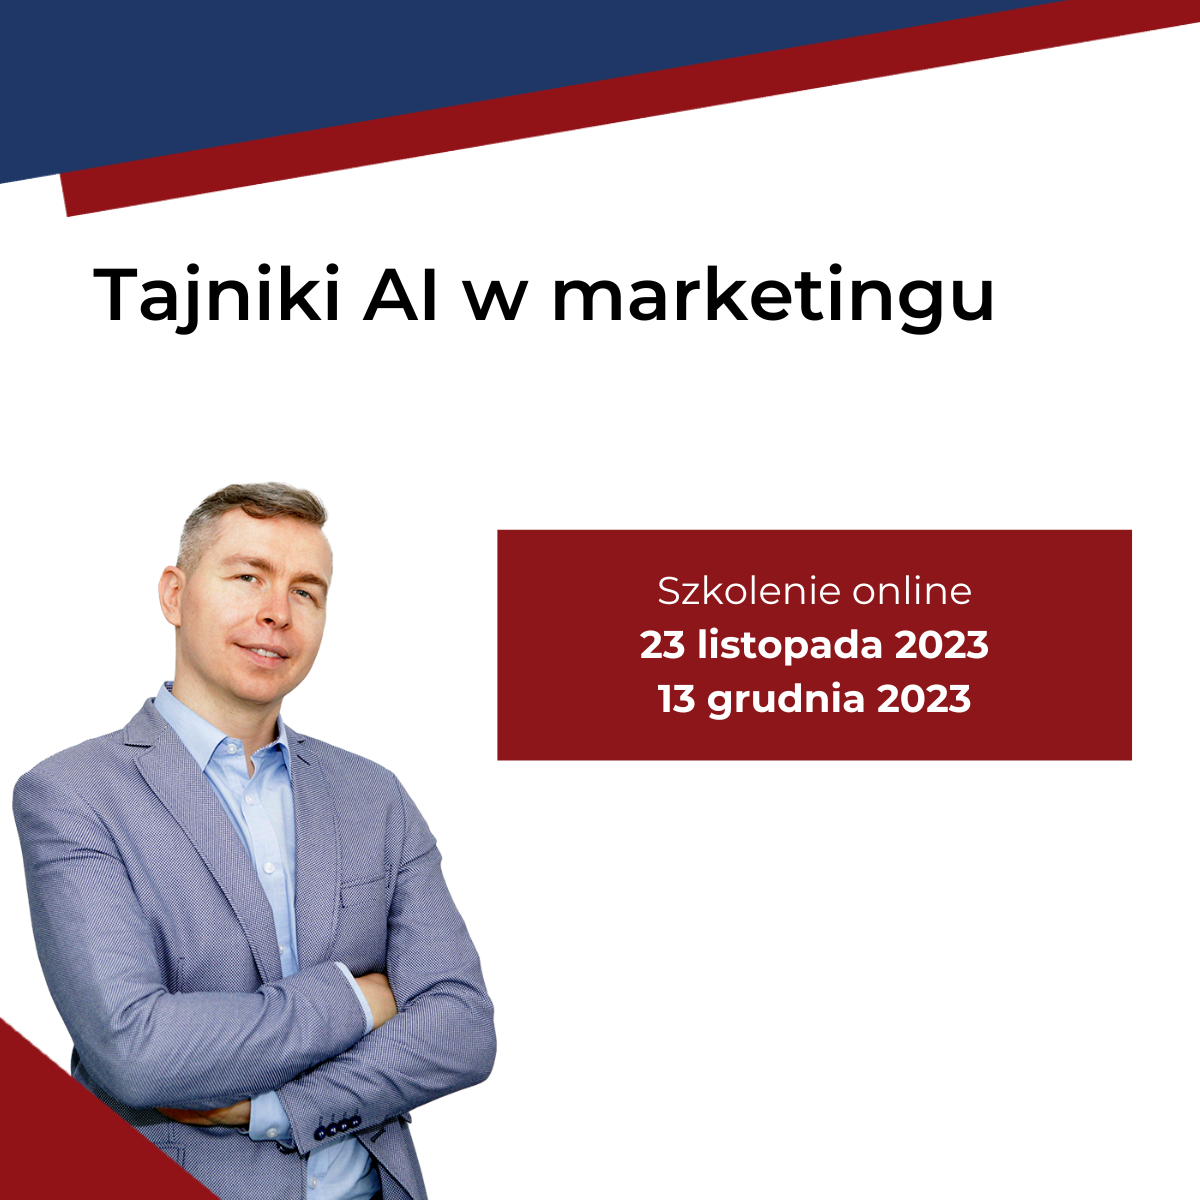 Tajniki AI w marketingu